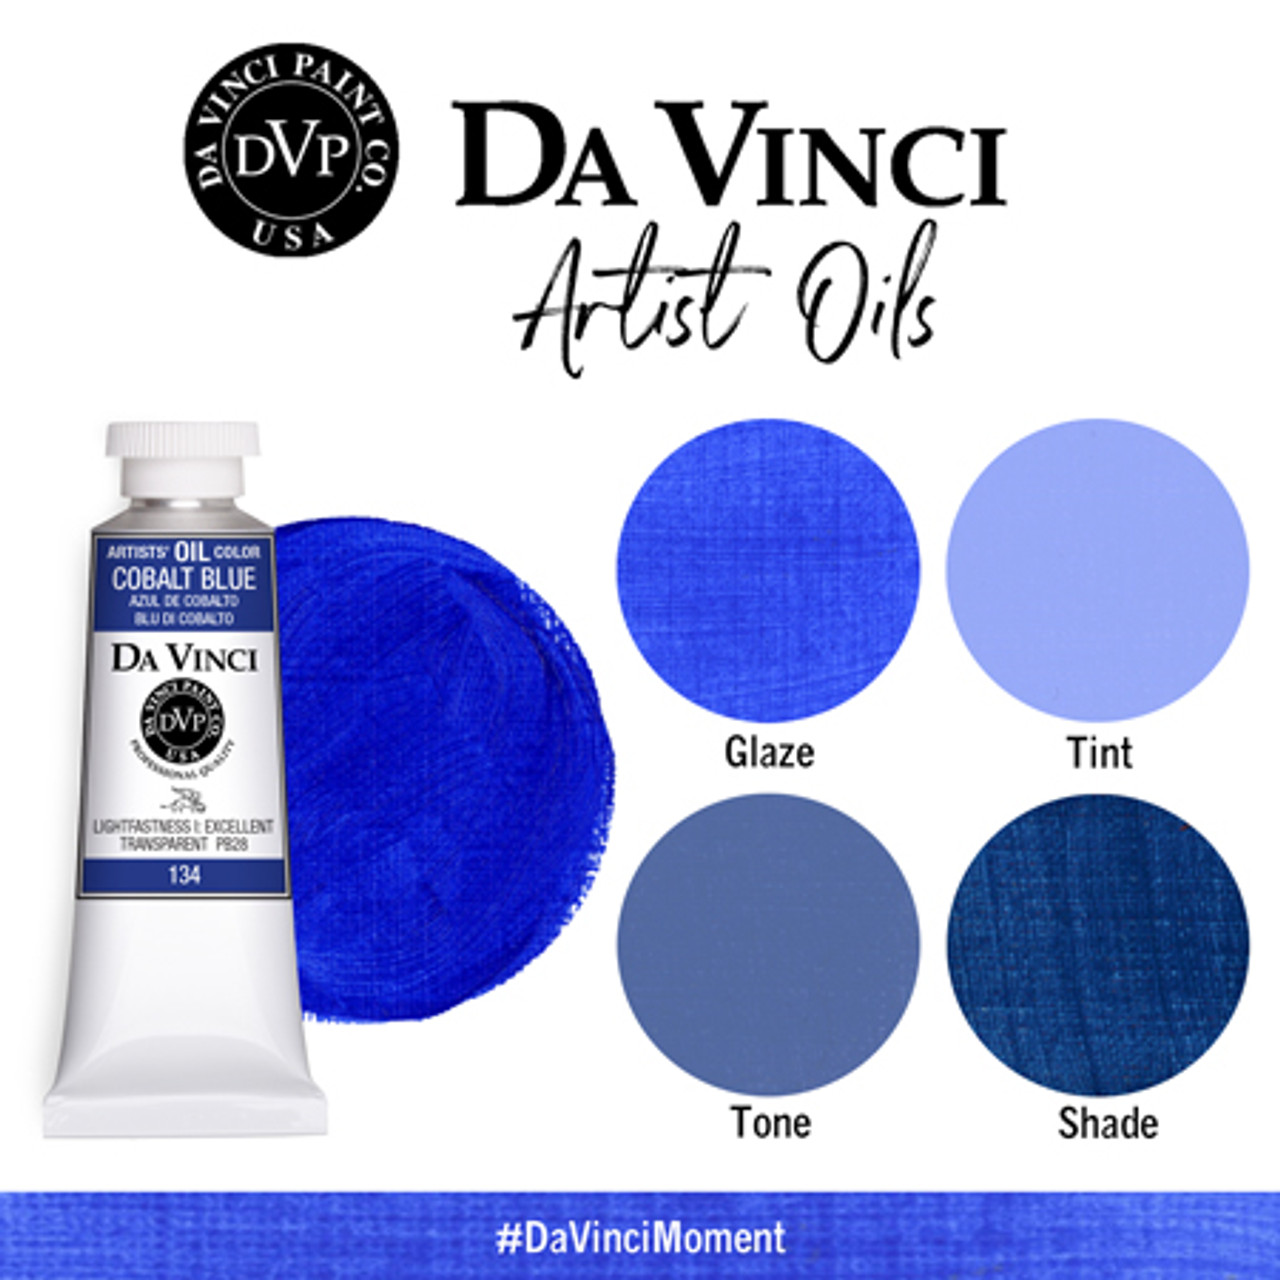 Da Vinci Cobalt Blue Artist Oil Paint - 37mL